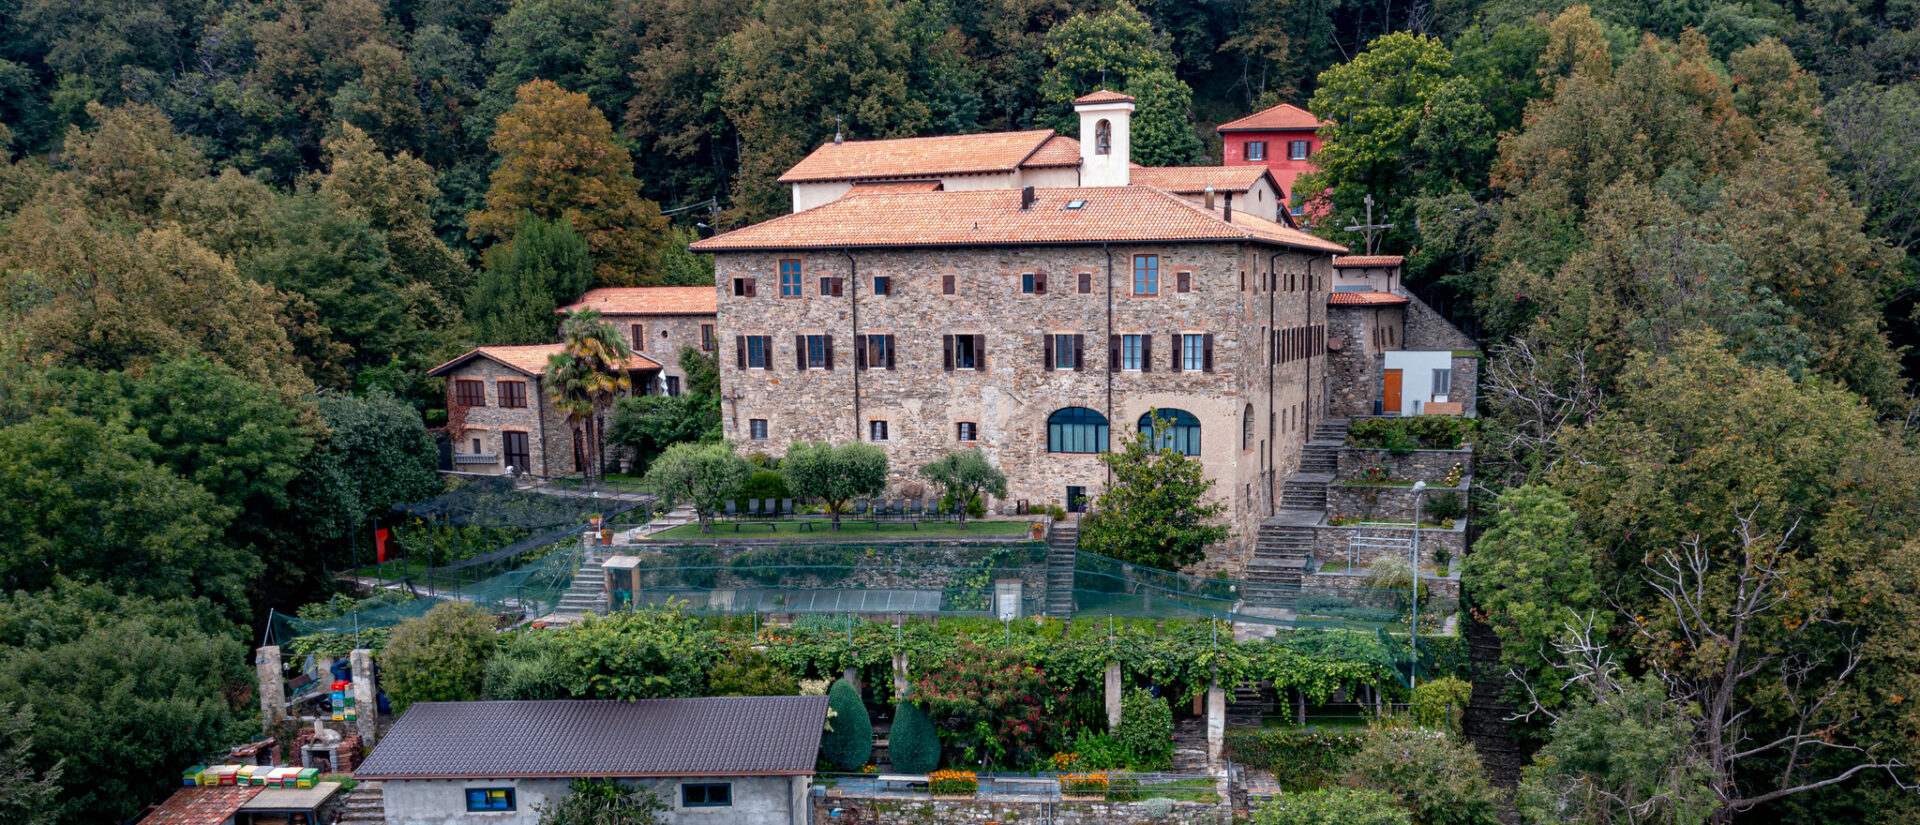 Le couvent de Bigorio, sur les hauteurs de Lugano, est un haut lieu de dévotion mariale | © mbeo/Flickr/CC BY-NC-ND 2.0